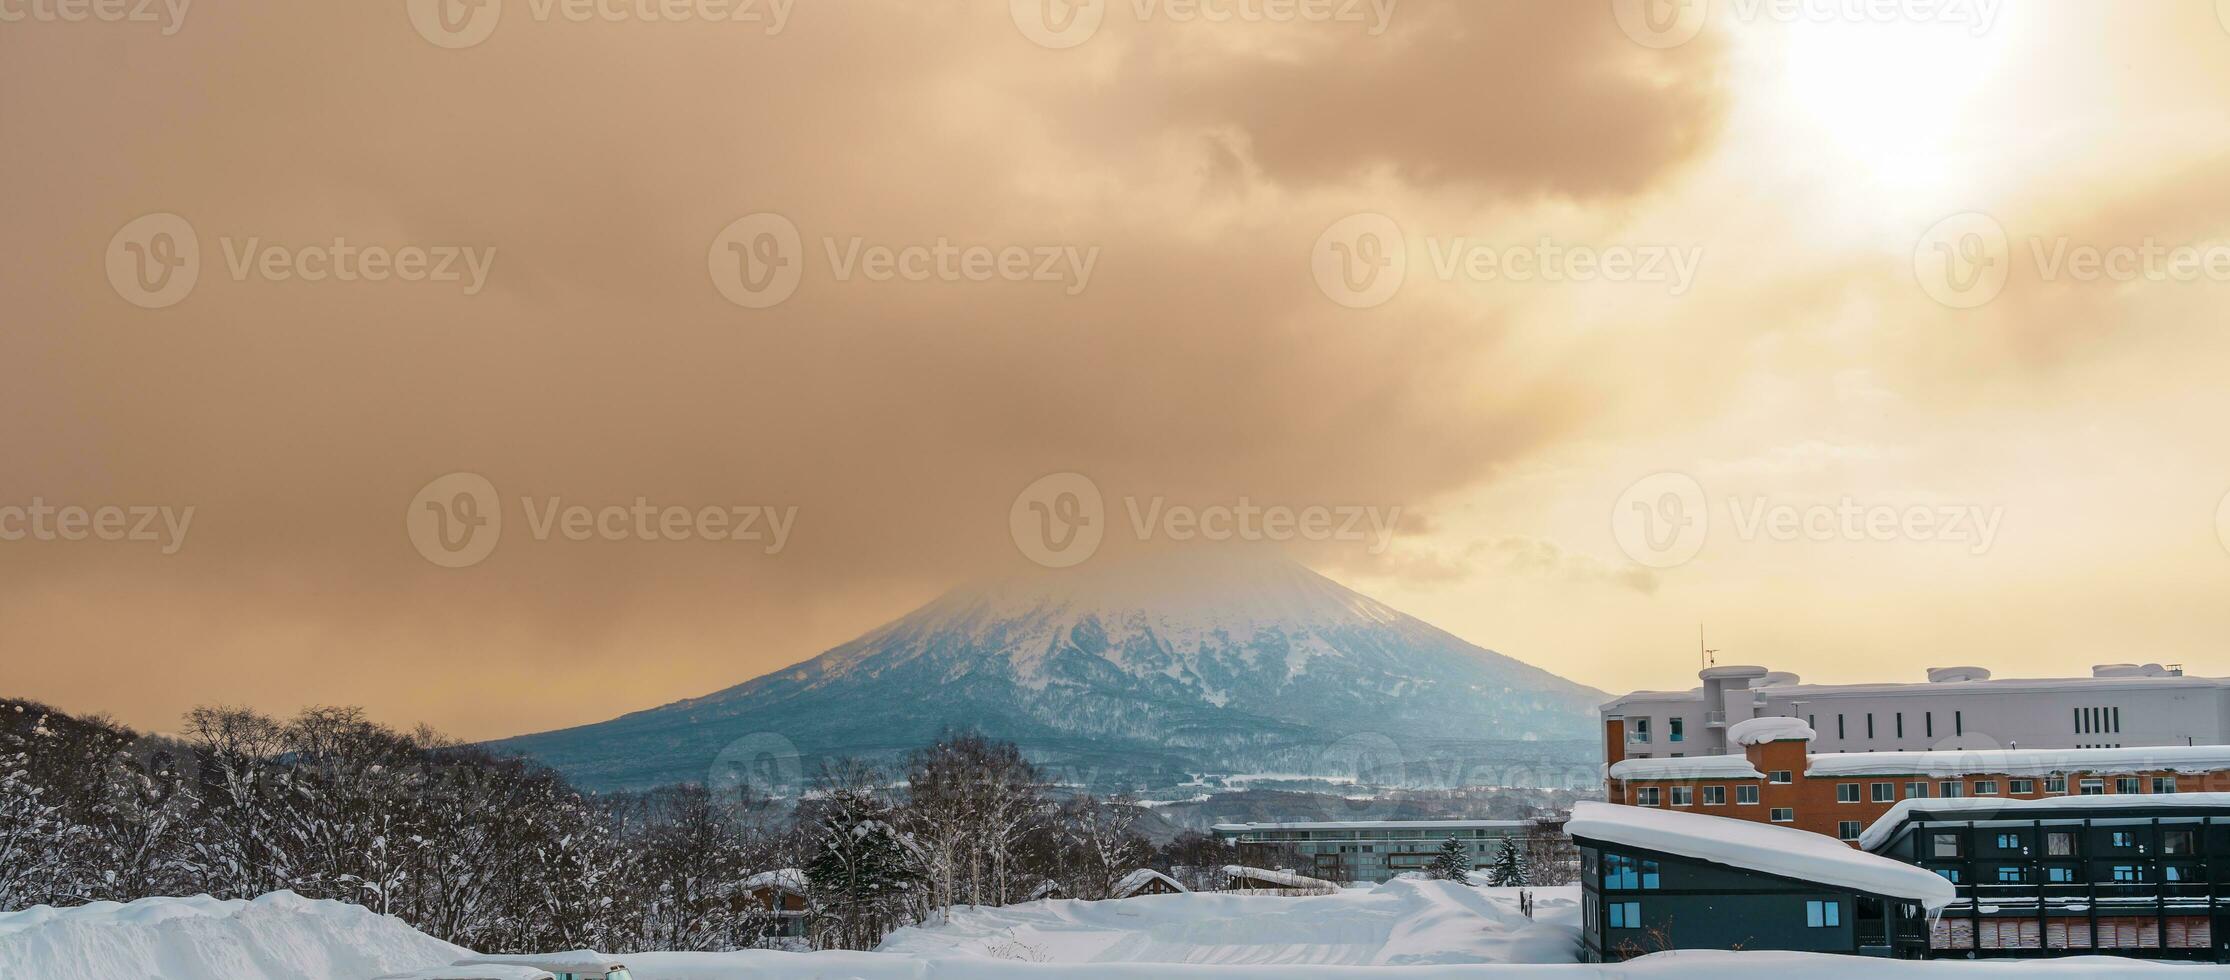 bellissimo yotei montagna con neve nel inverno stagione a niseko. punto di riferimento e popolare per sciare e snowboard turisti attrazioni nel hokkaido, Giappone. viaggio e vacanza concetto foto